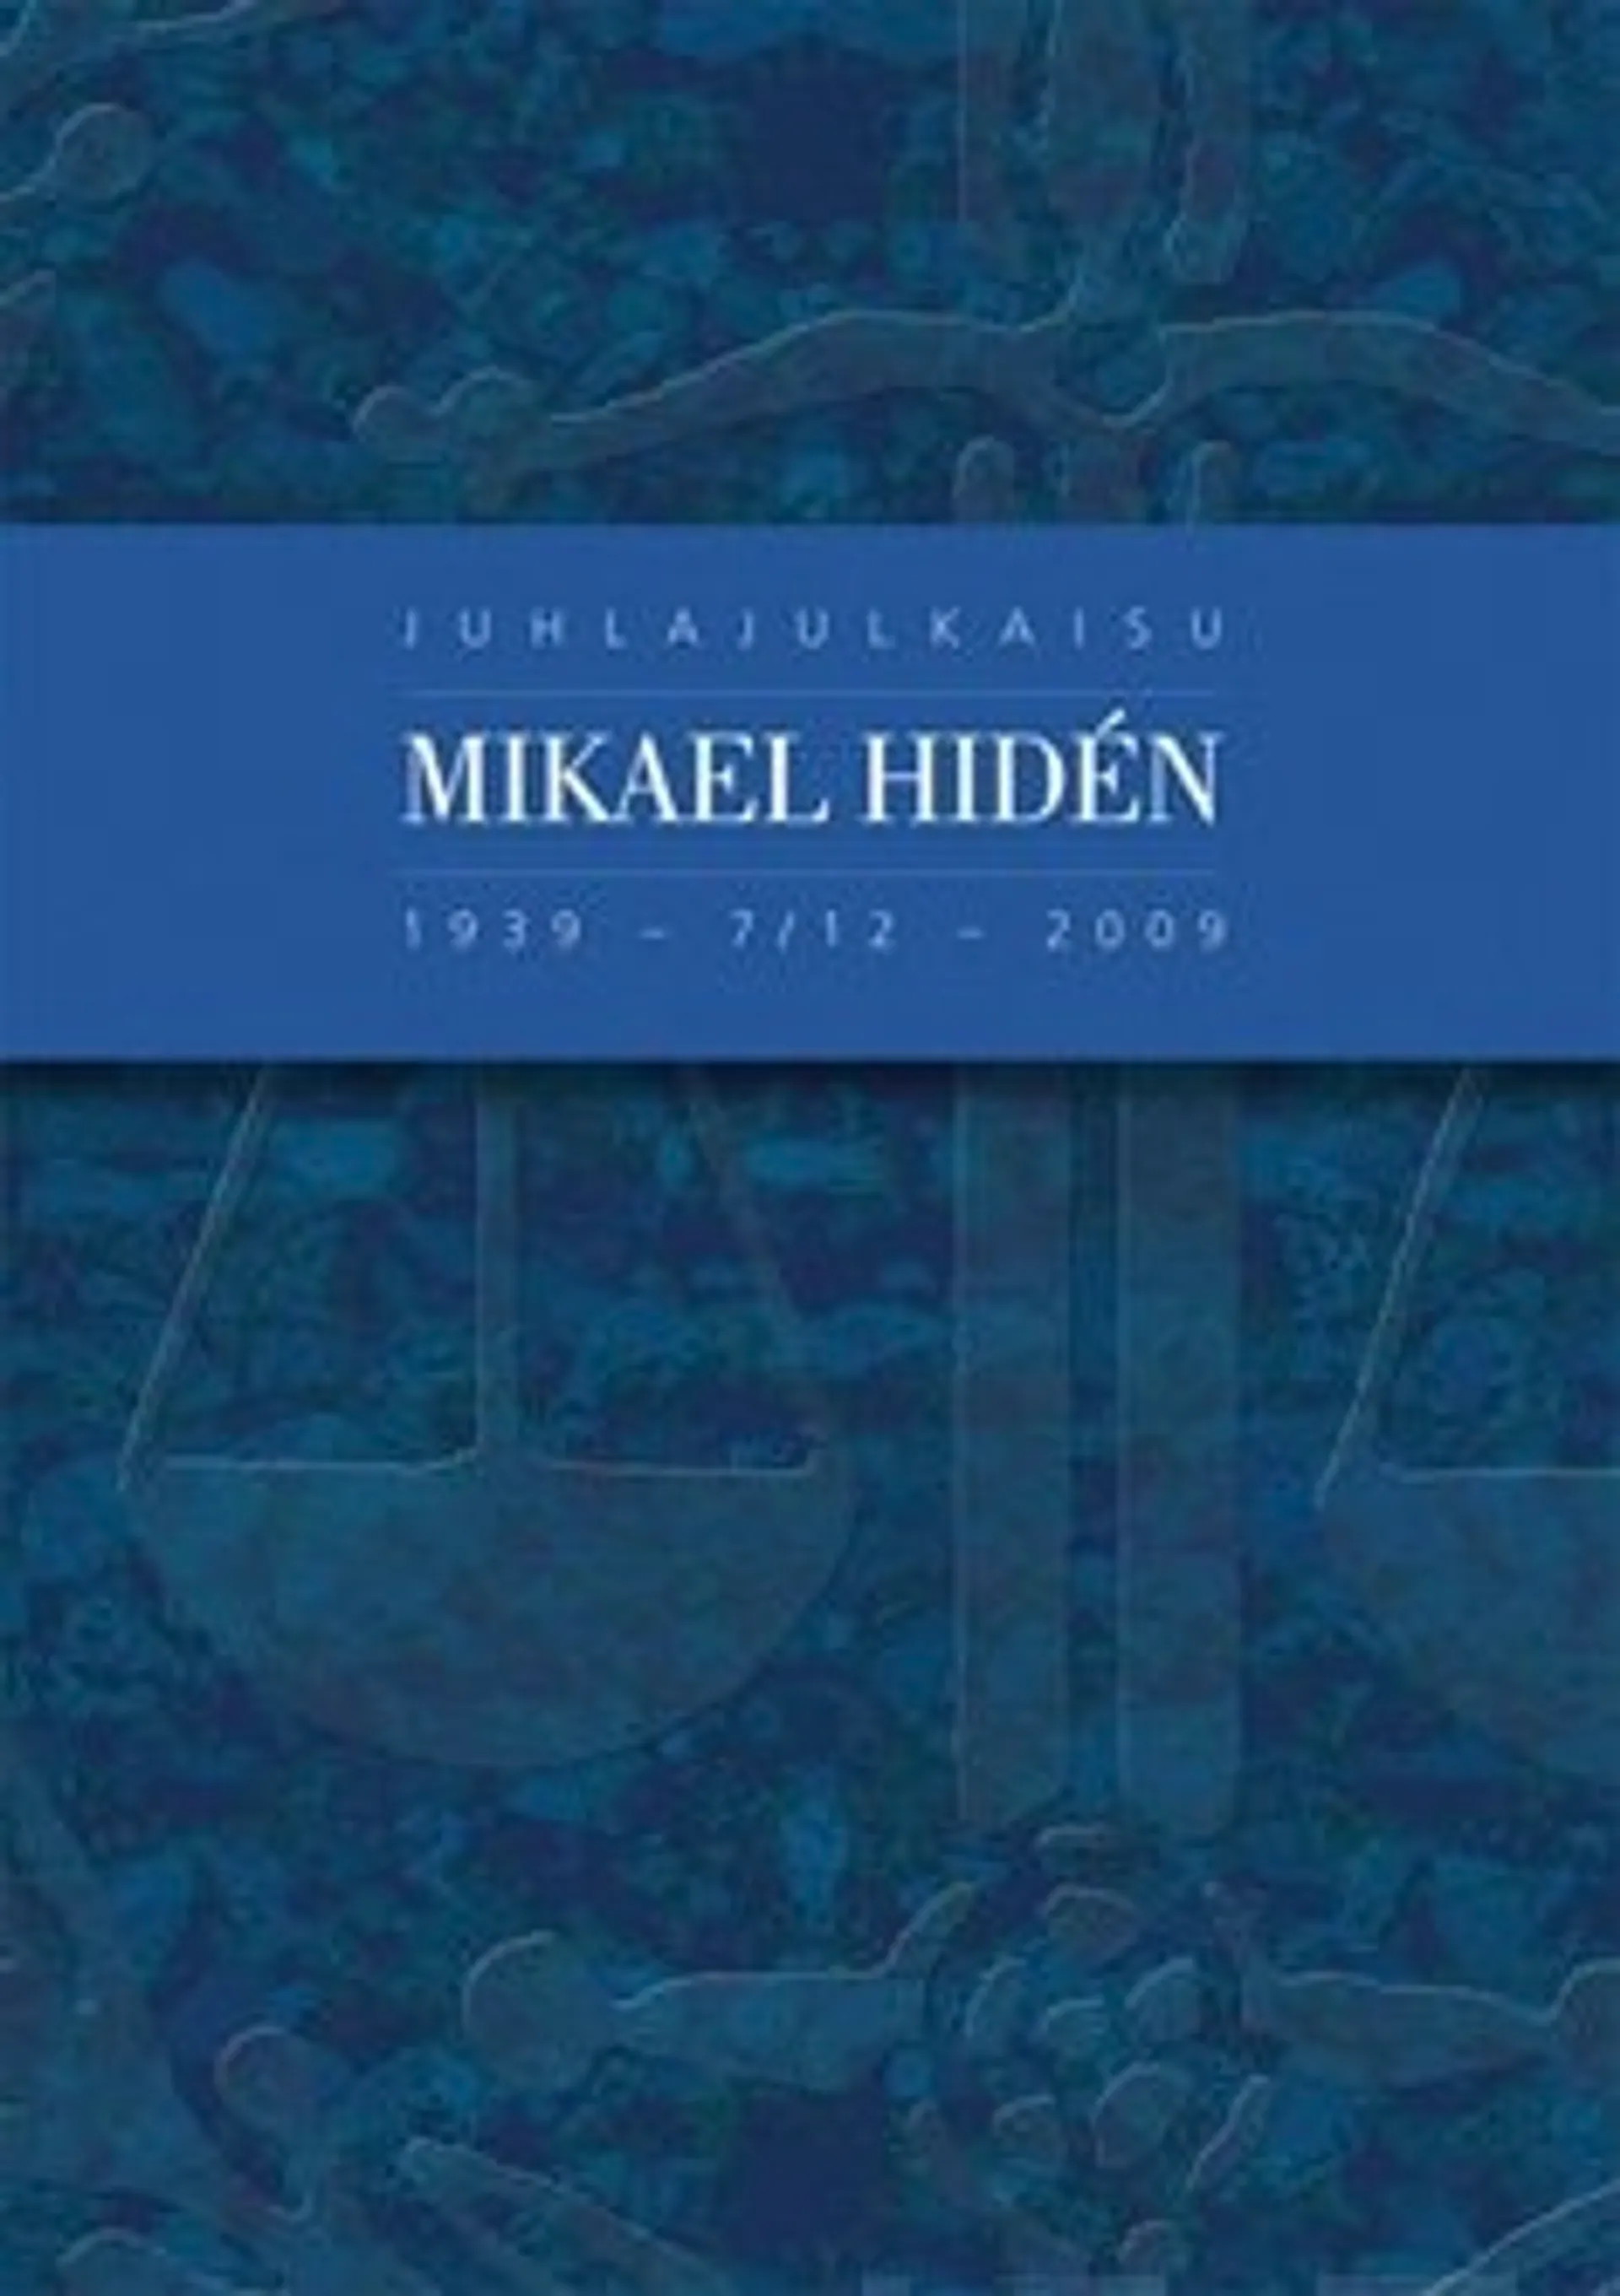 Juhlajulkaisu Mikael Hiden 1939-7/12-2009